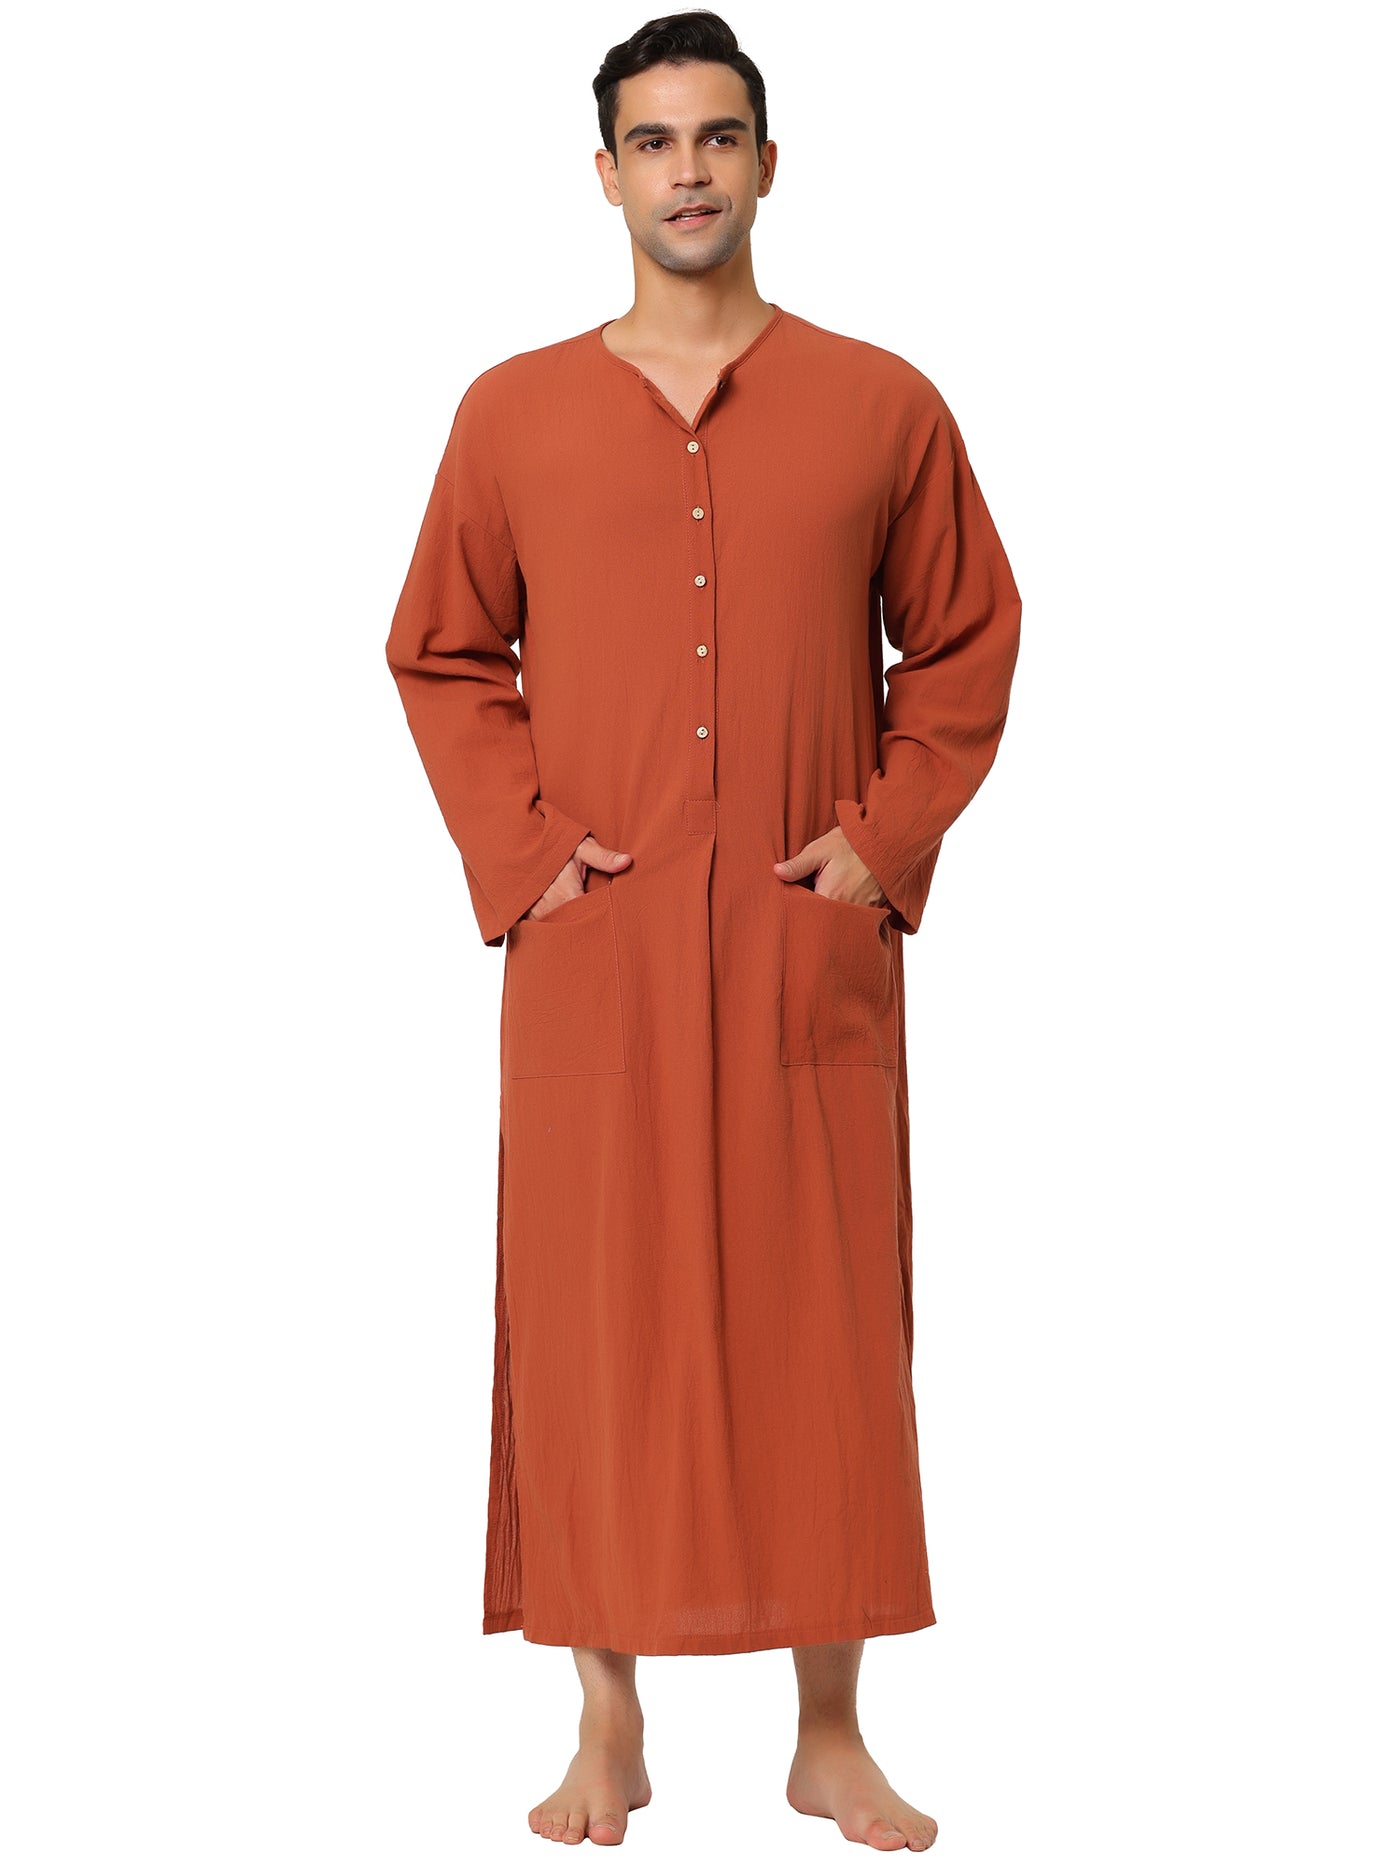 Bublédon Cotton Solid Color Sleep Shirt Side Split Long Gown